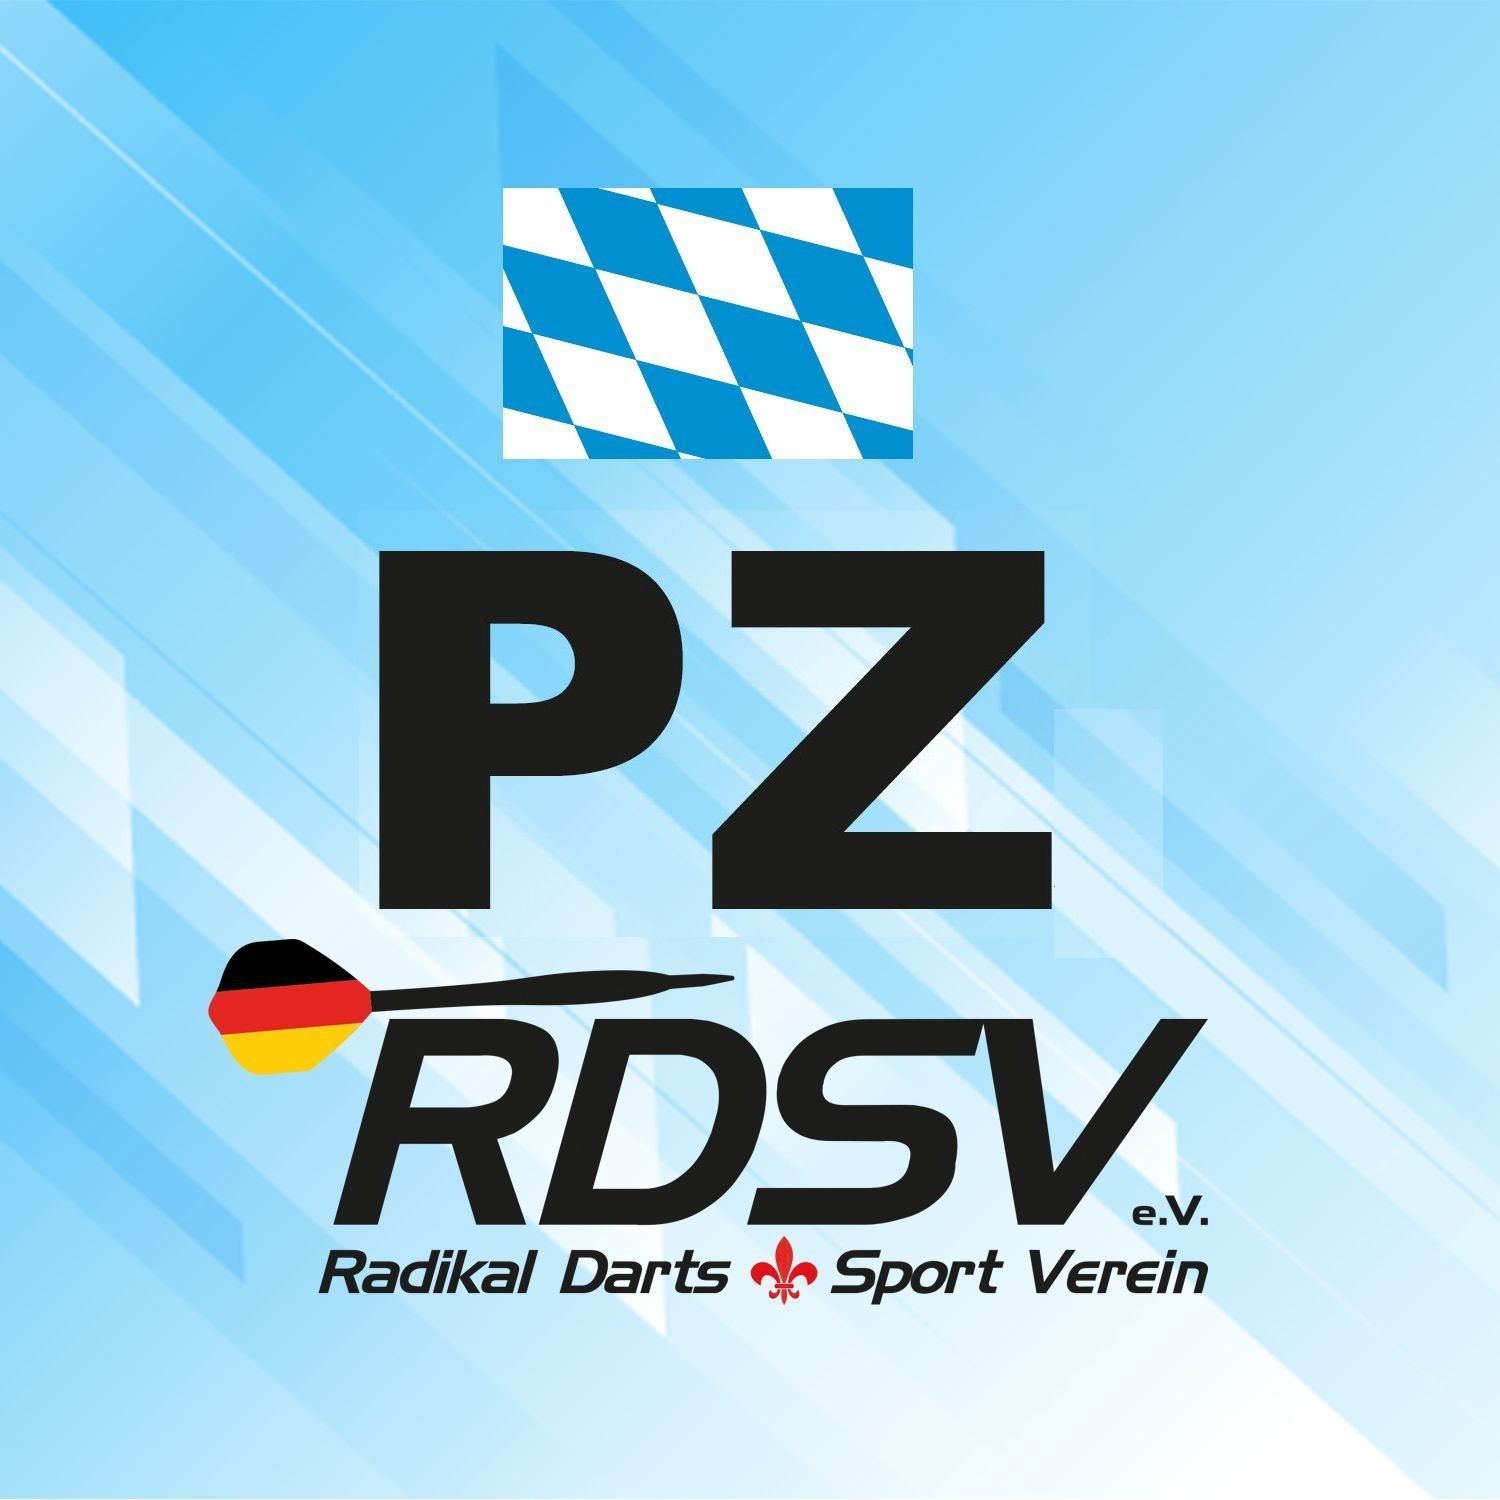 Bayern | rdsvev.org (RDSV e.V.)